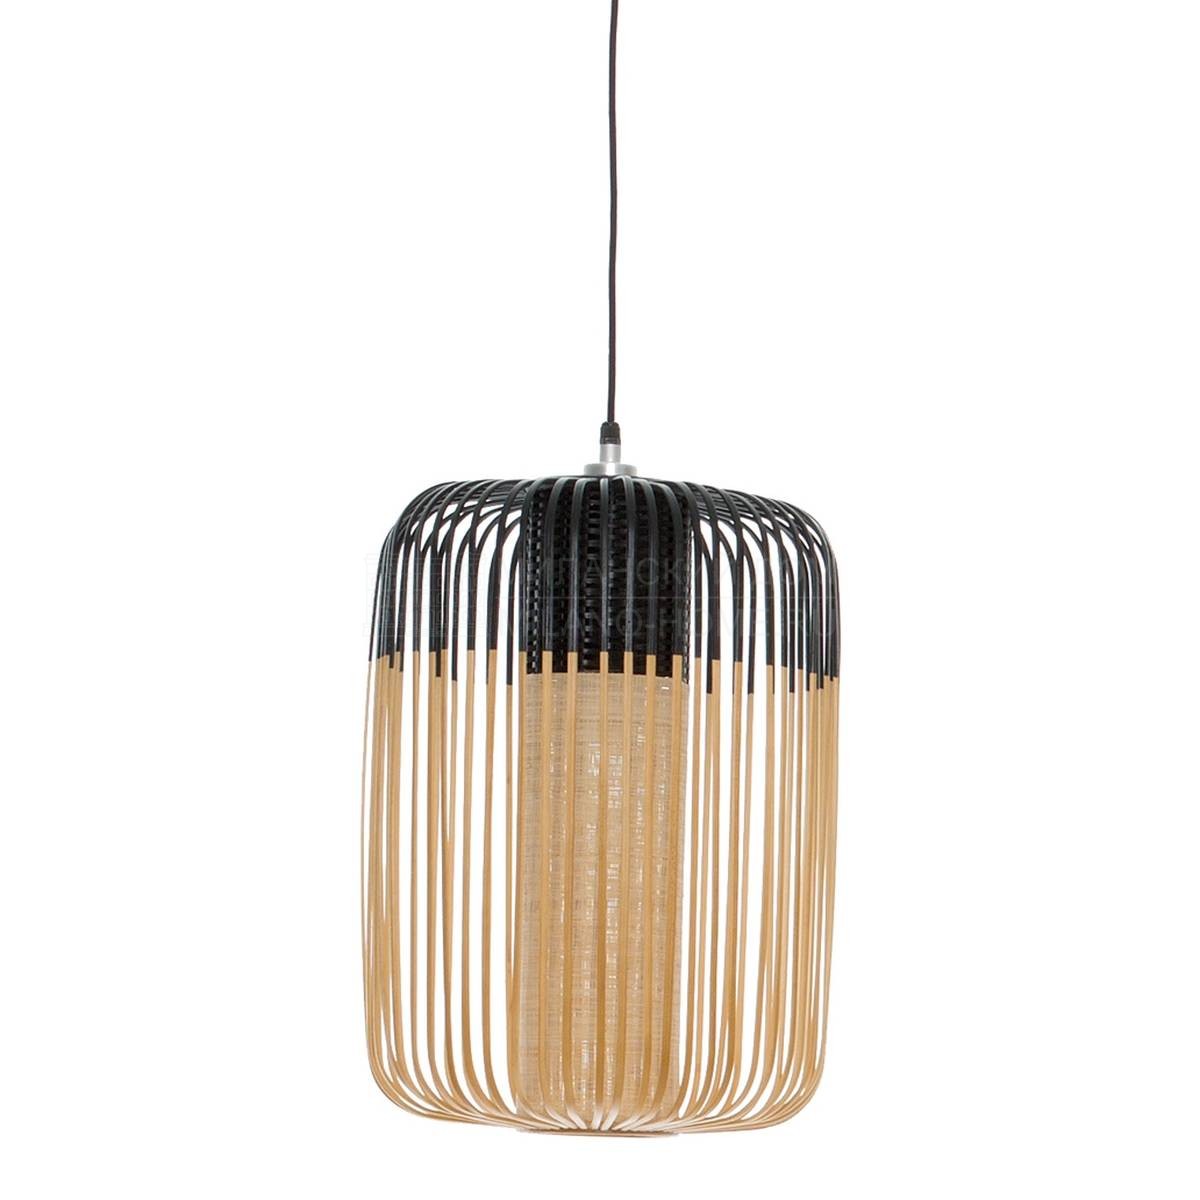 Подвесной светильник Pendant lamp bamboo light l из Франции фабрики FORESTIER